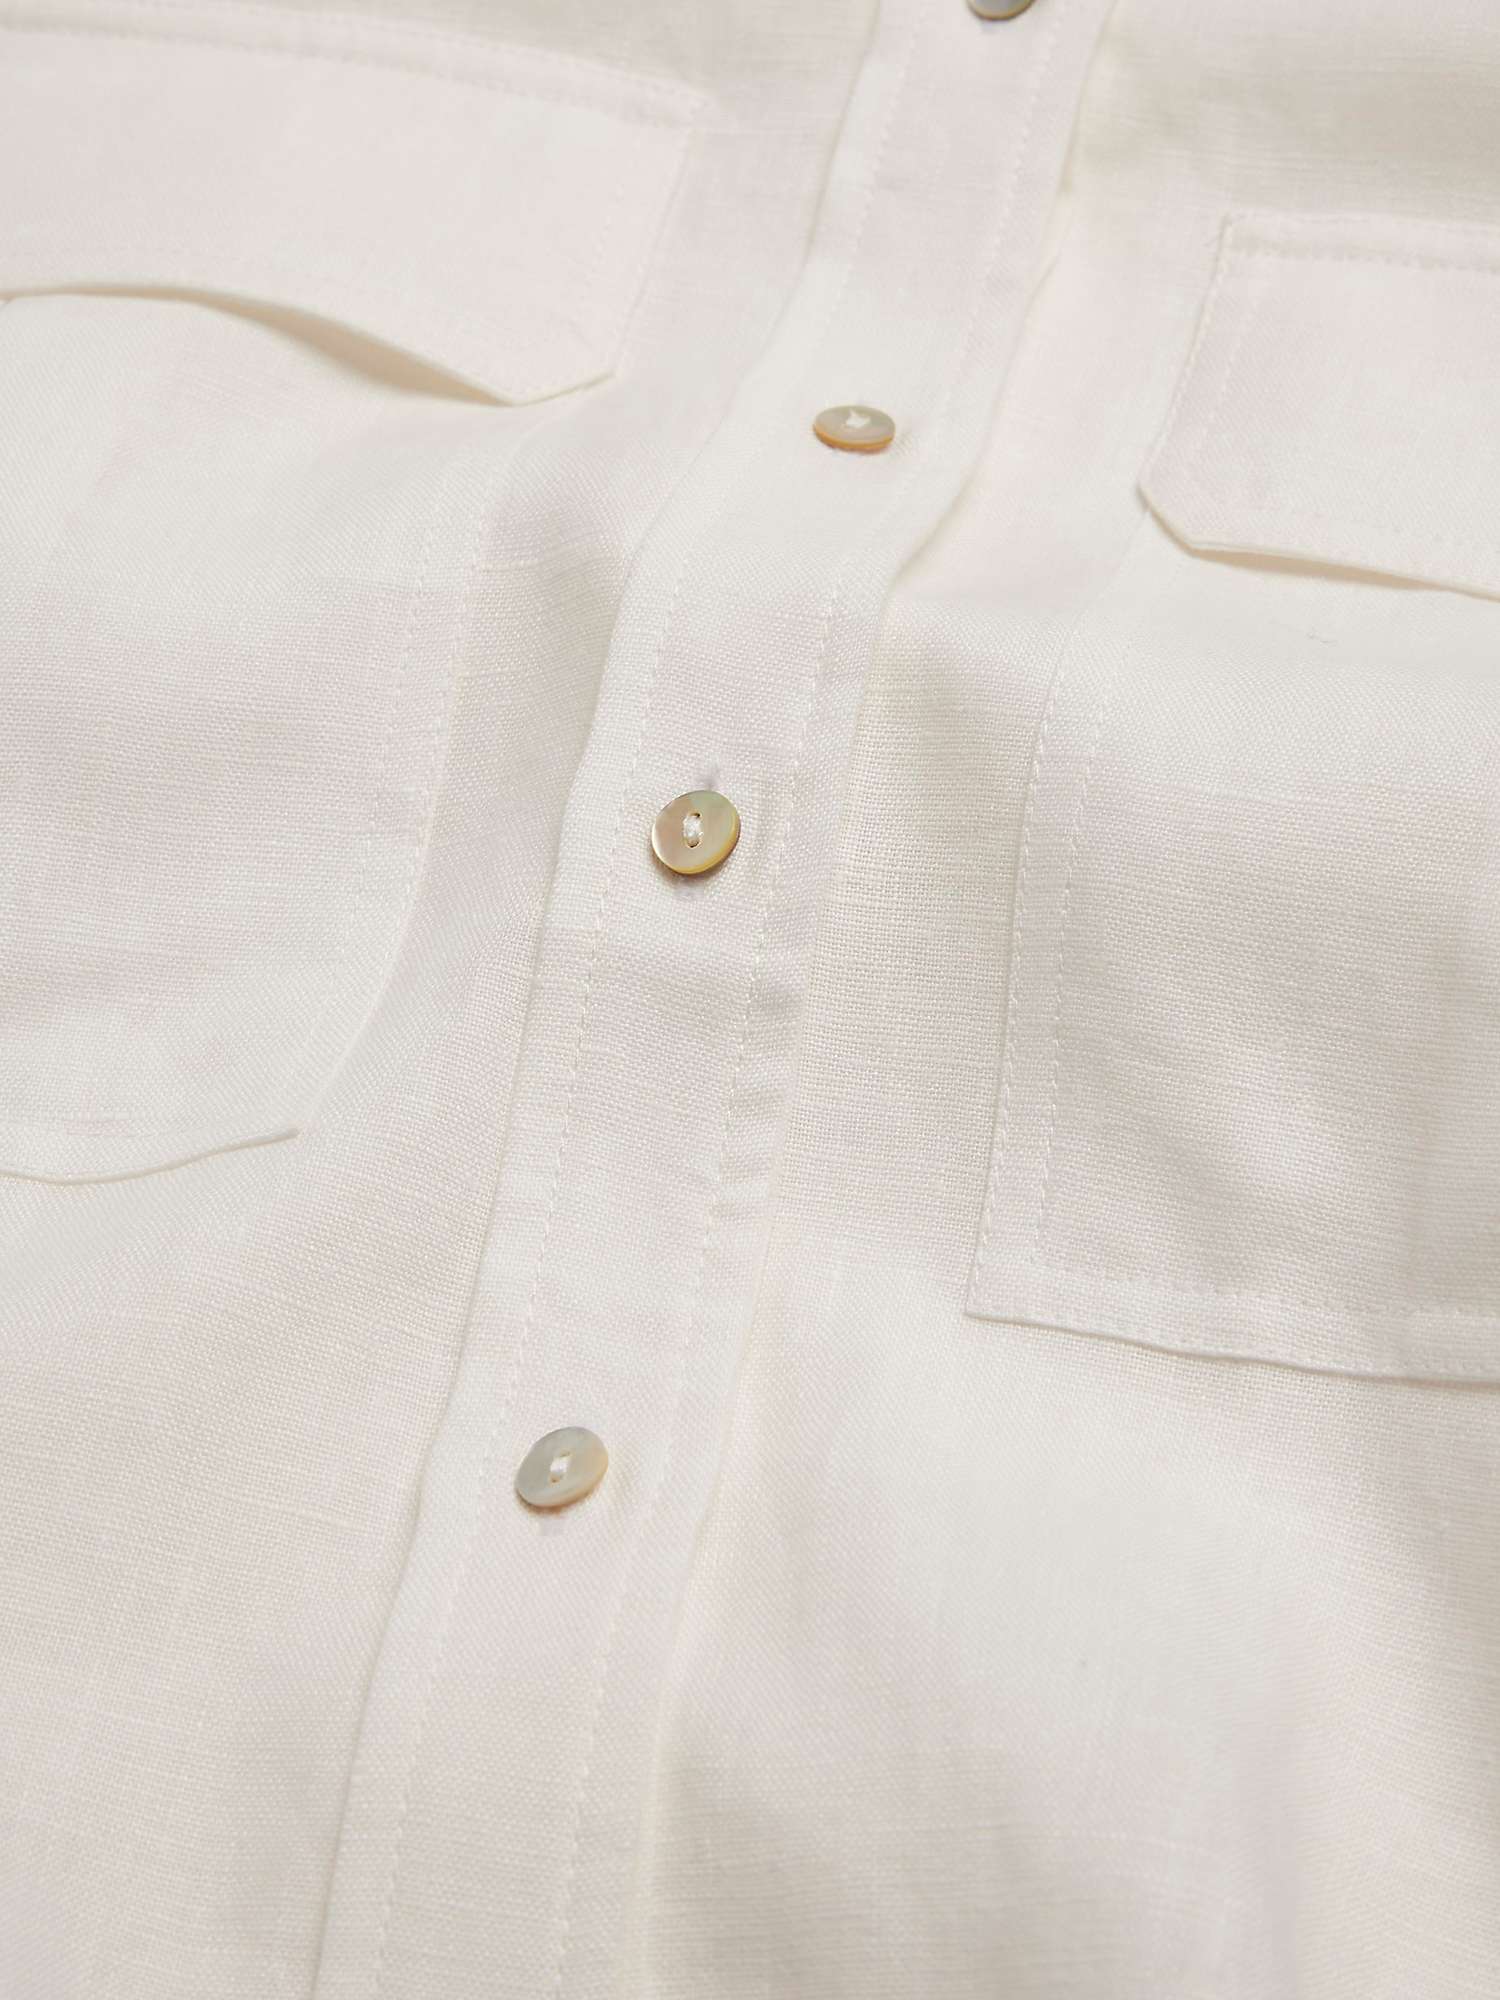 Buy Mint Velvet Cropped Linen Shirt, White Ivory Online at johnlewis.com